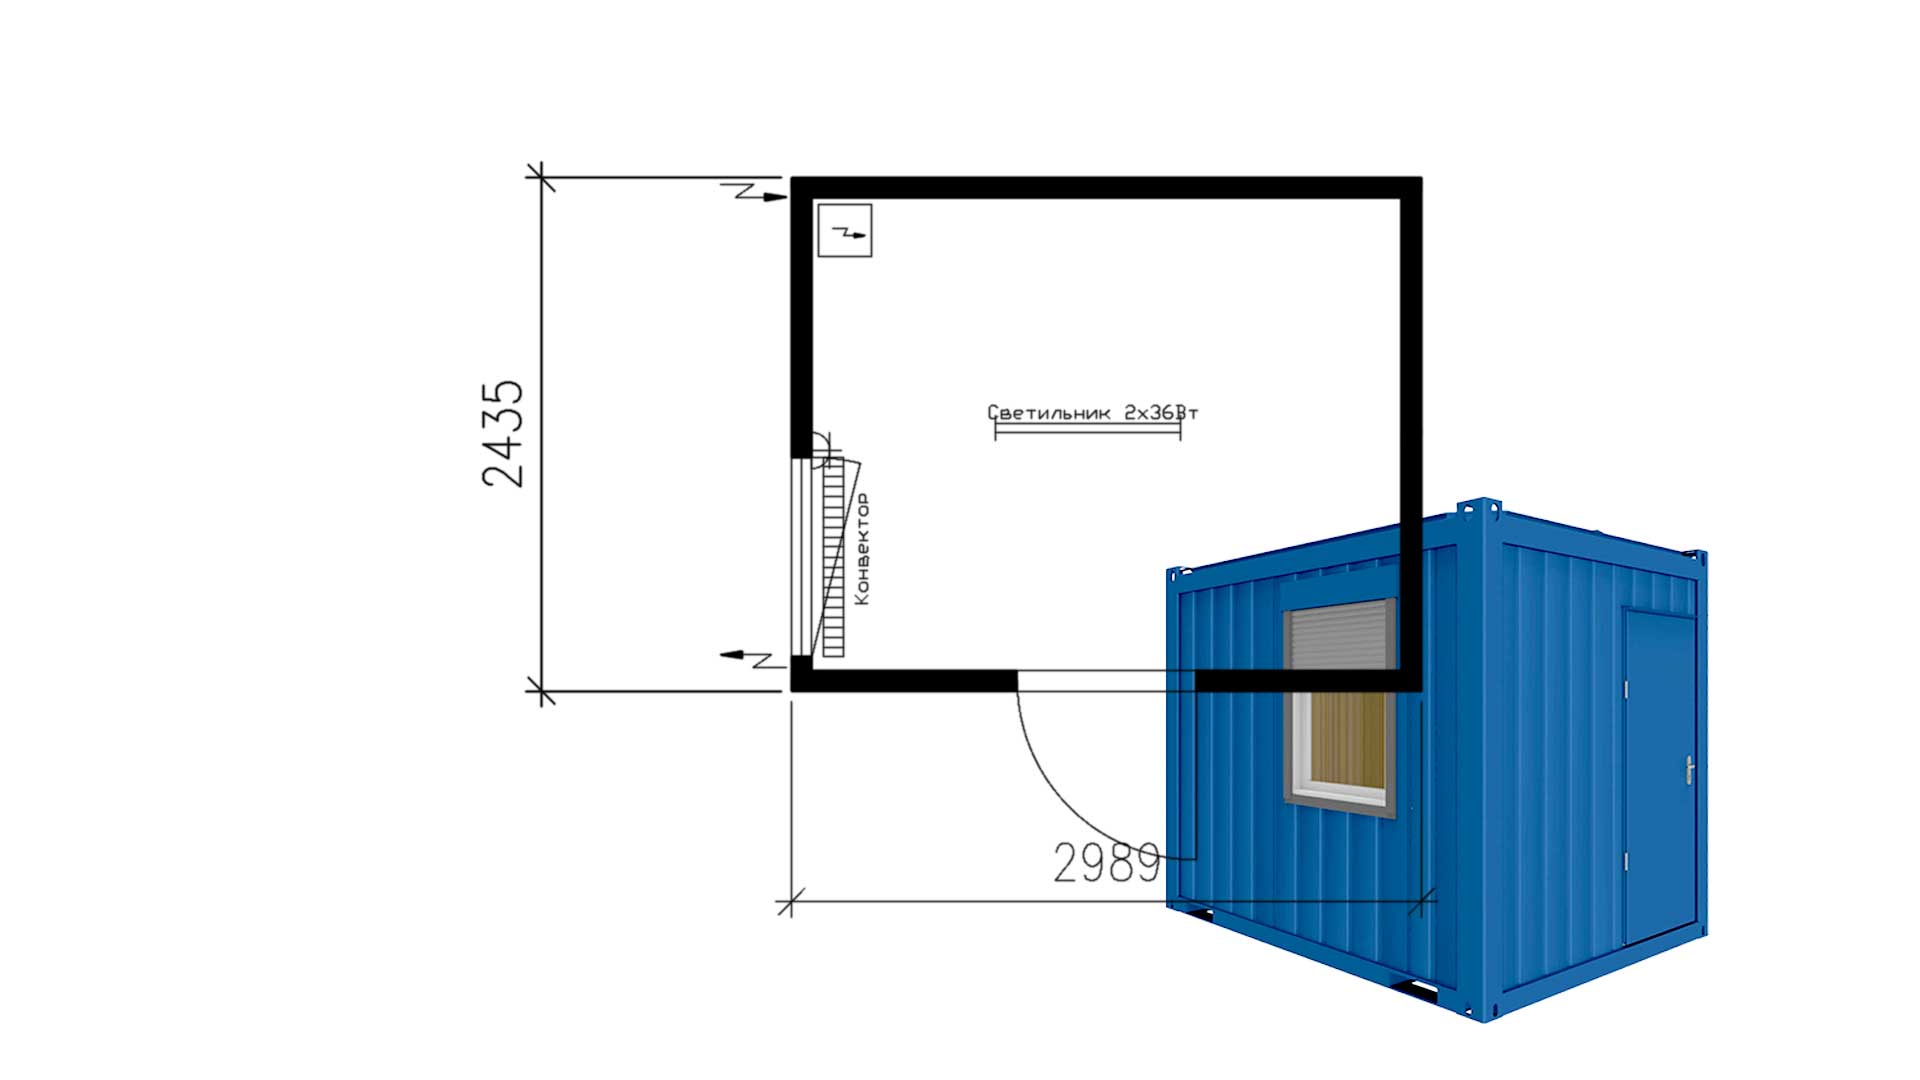 Планировка блок-контейнера Containex 10-футов, размеры: 2989/2435/2591 (Д/Ш/В) мм